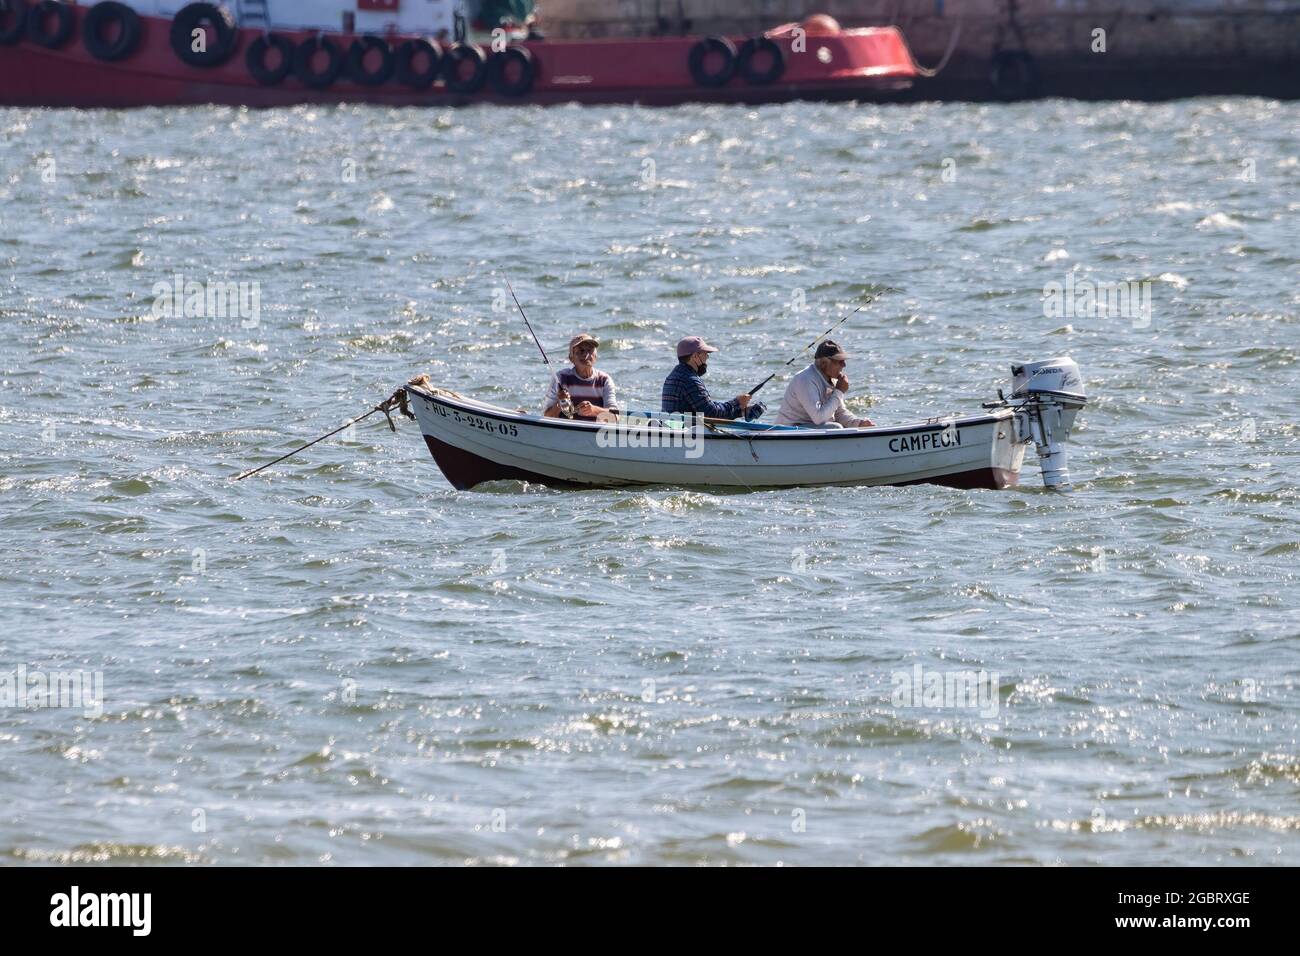 Huelva, Espagne - 3 août 2021 : pêcheurs à la ligne dans un bateau en bois Banque D'Images